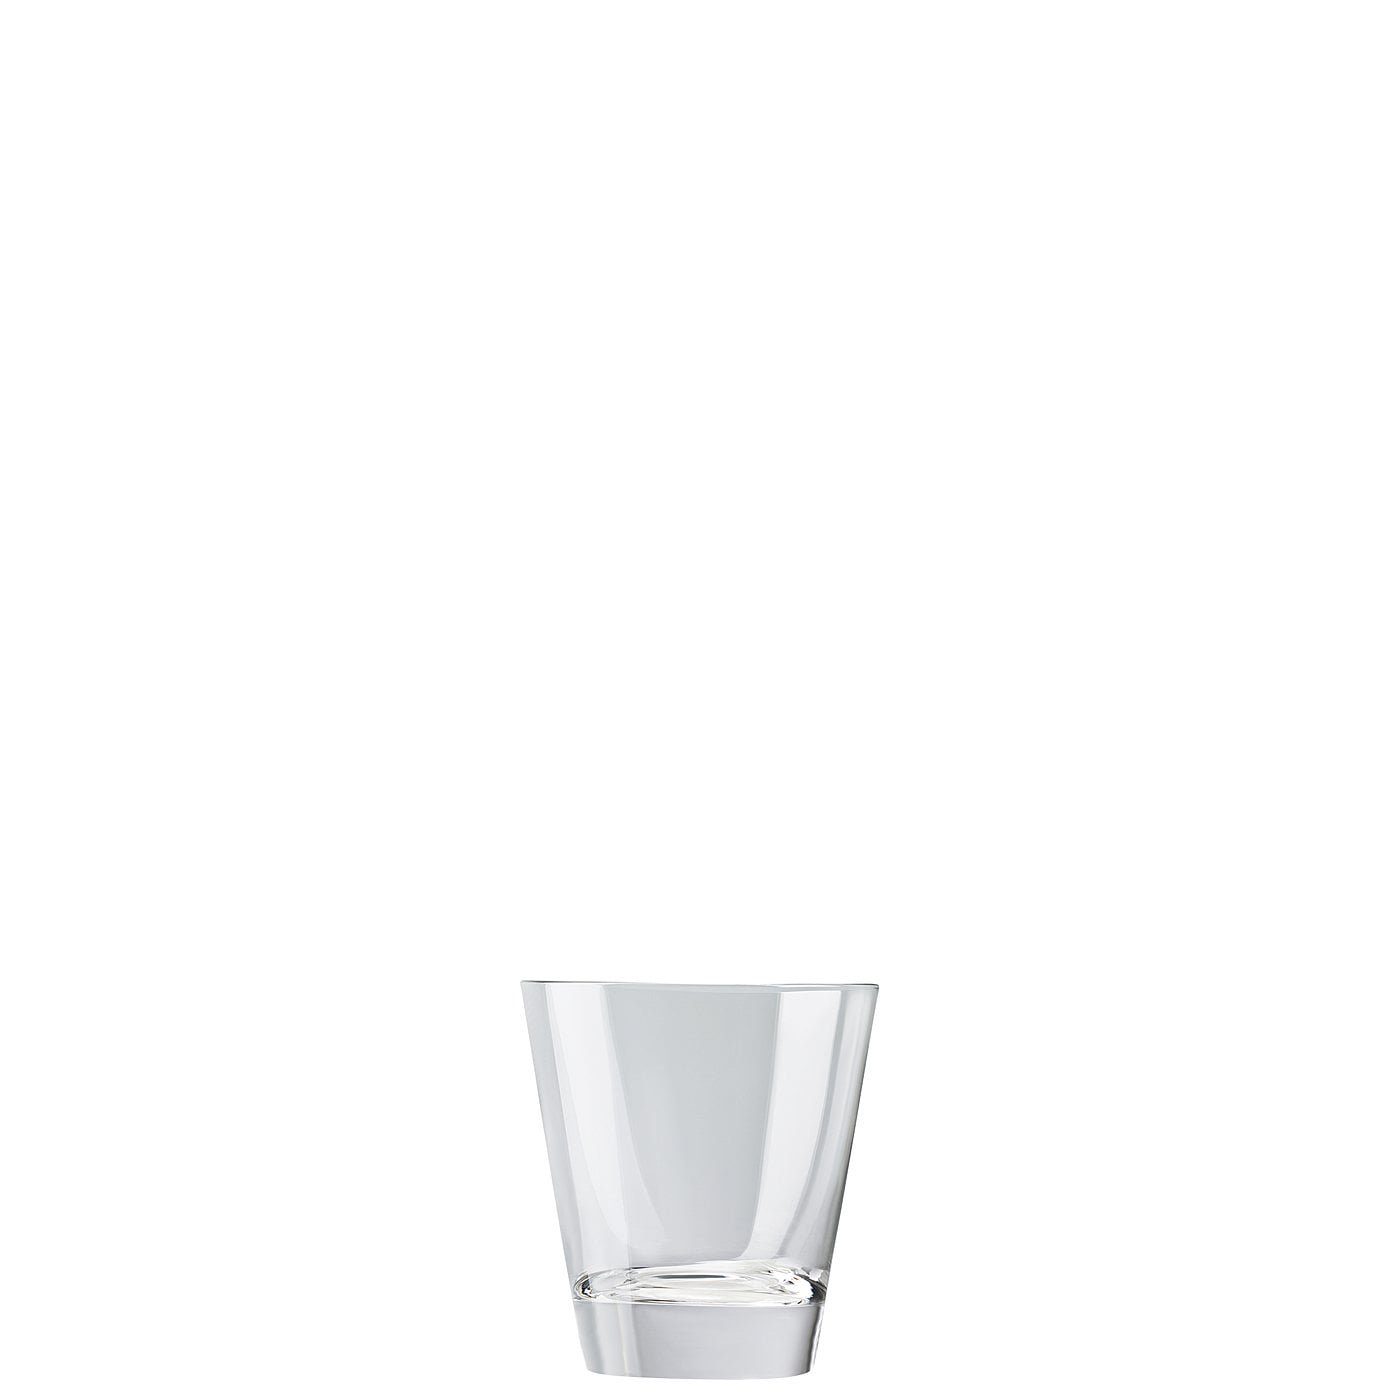 Rosenthal Whiskyglas DiVino Glatt Whisky, Glas